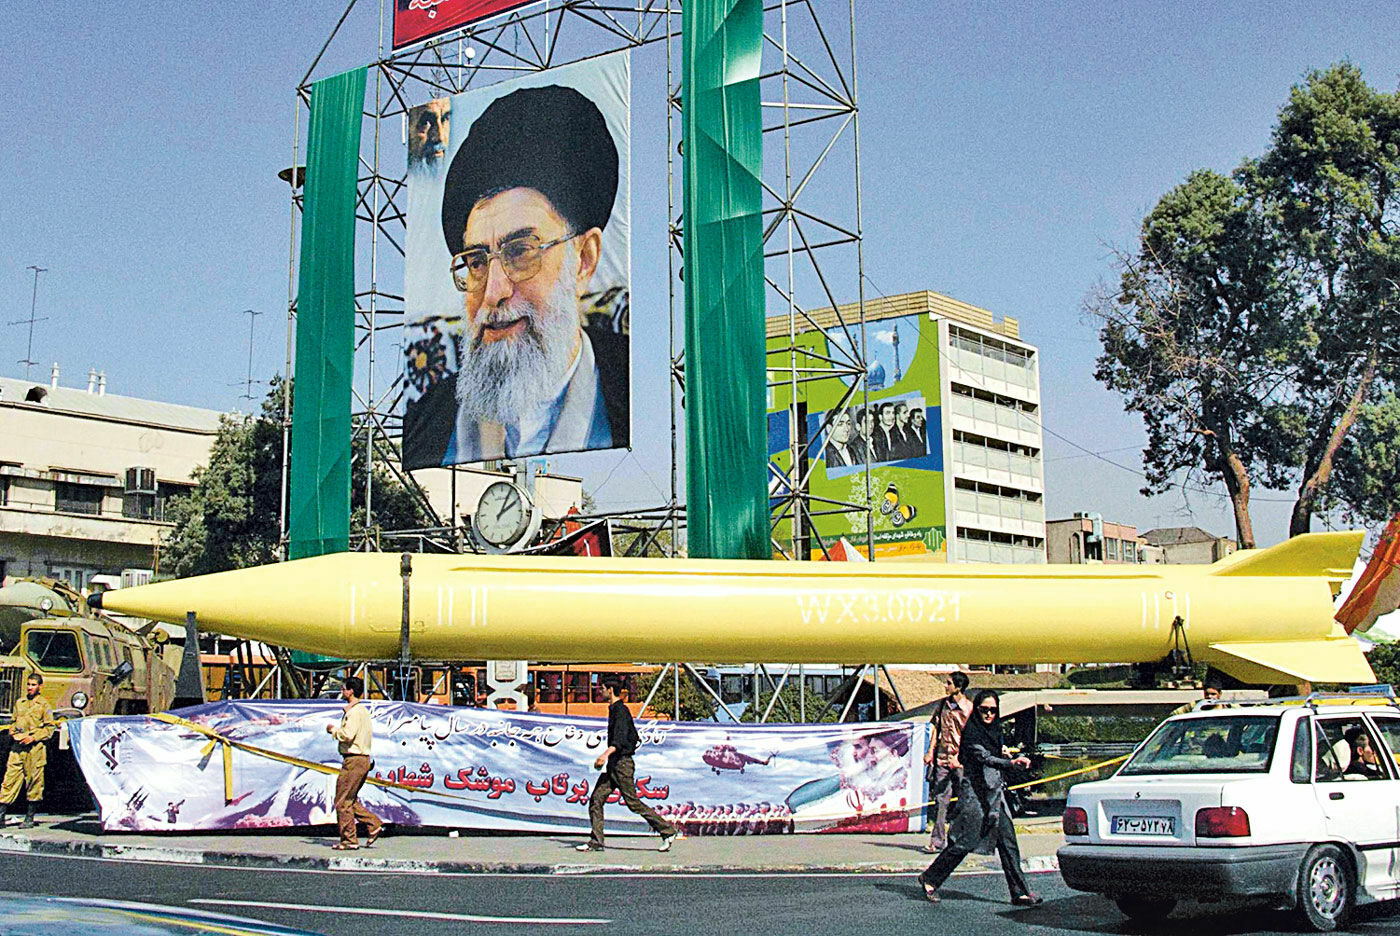 Иран готов производить ядерное оружие, но не станет этого делать, заявили в Тегеране